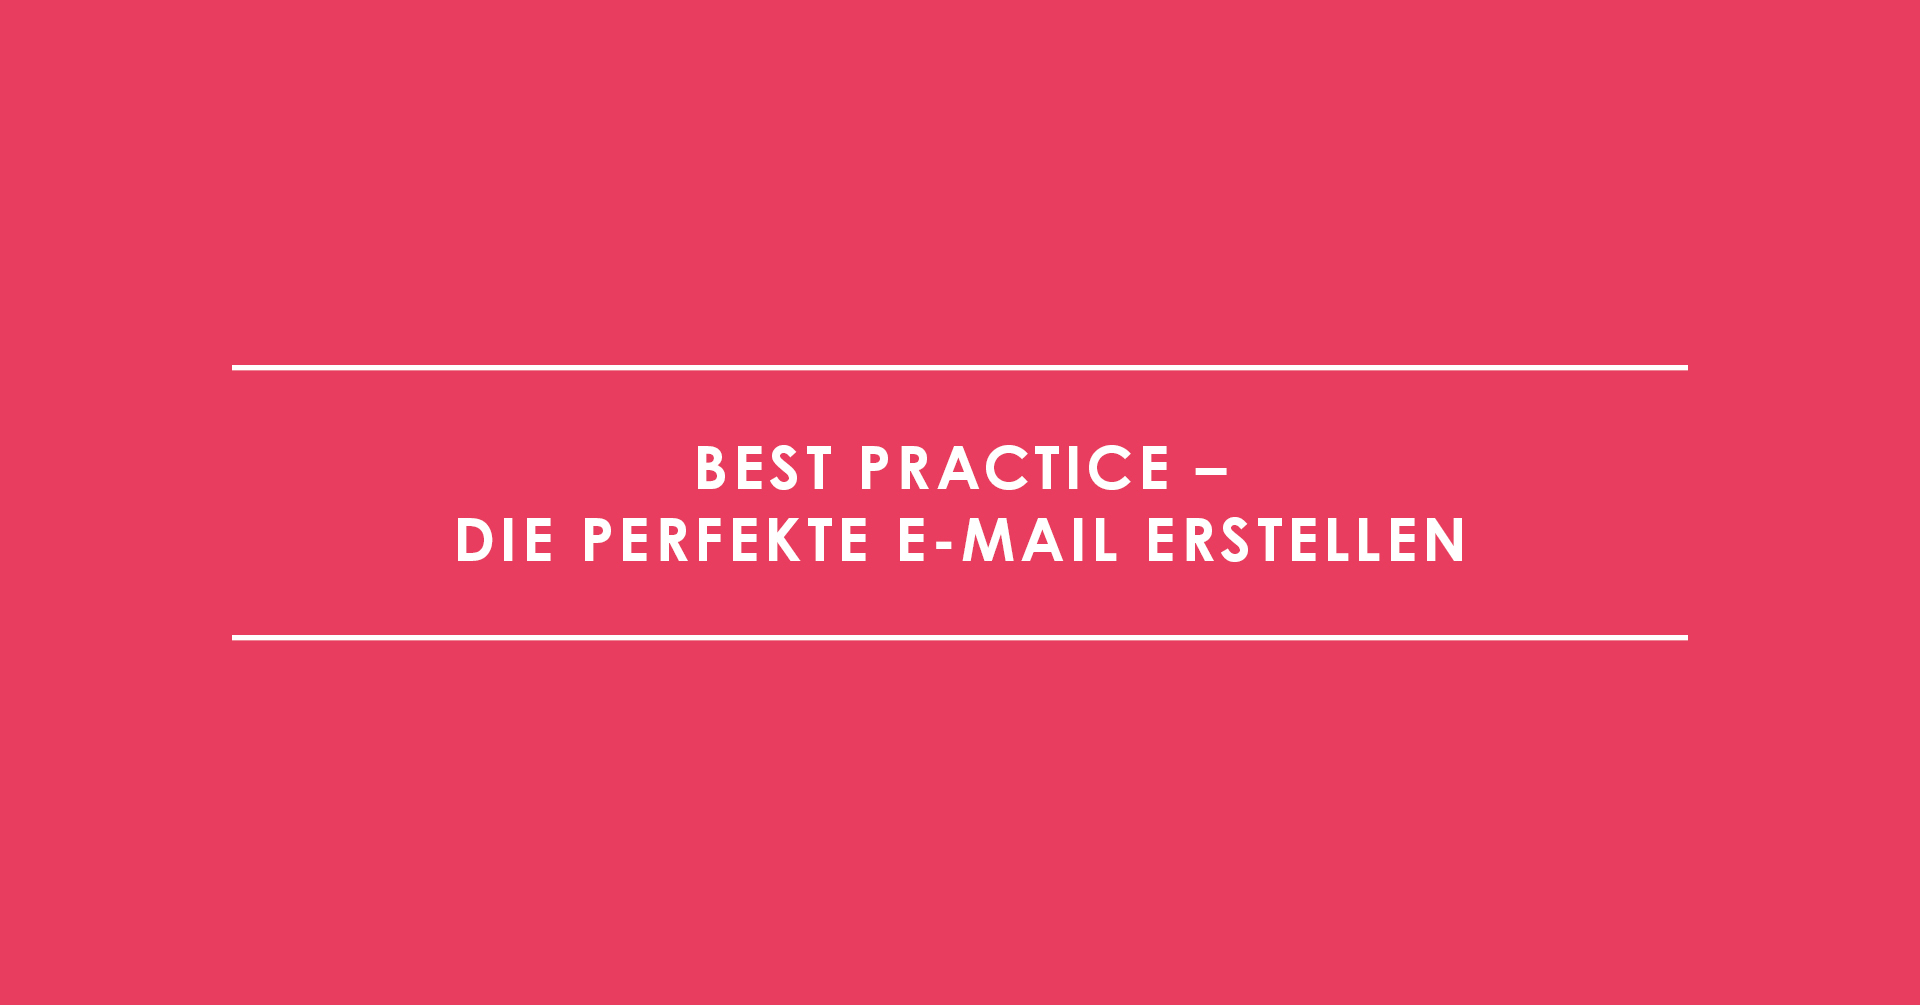 Best Practice – Die perfekte E-Mail erstellen